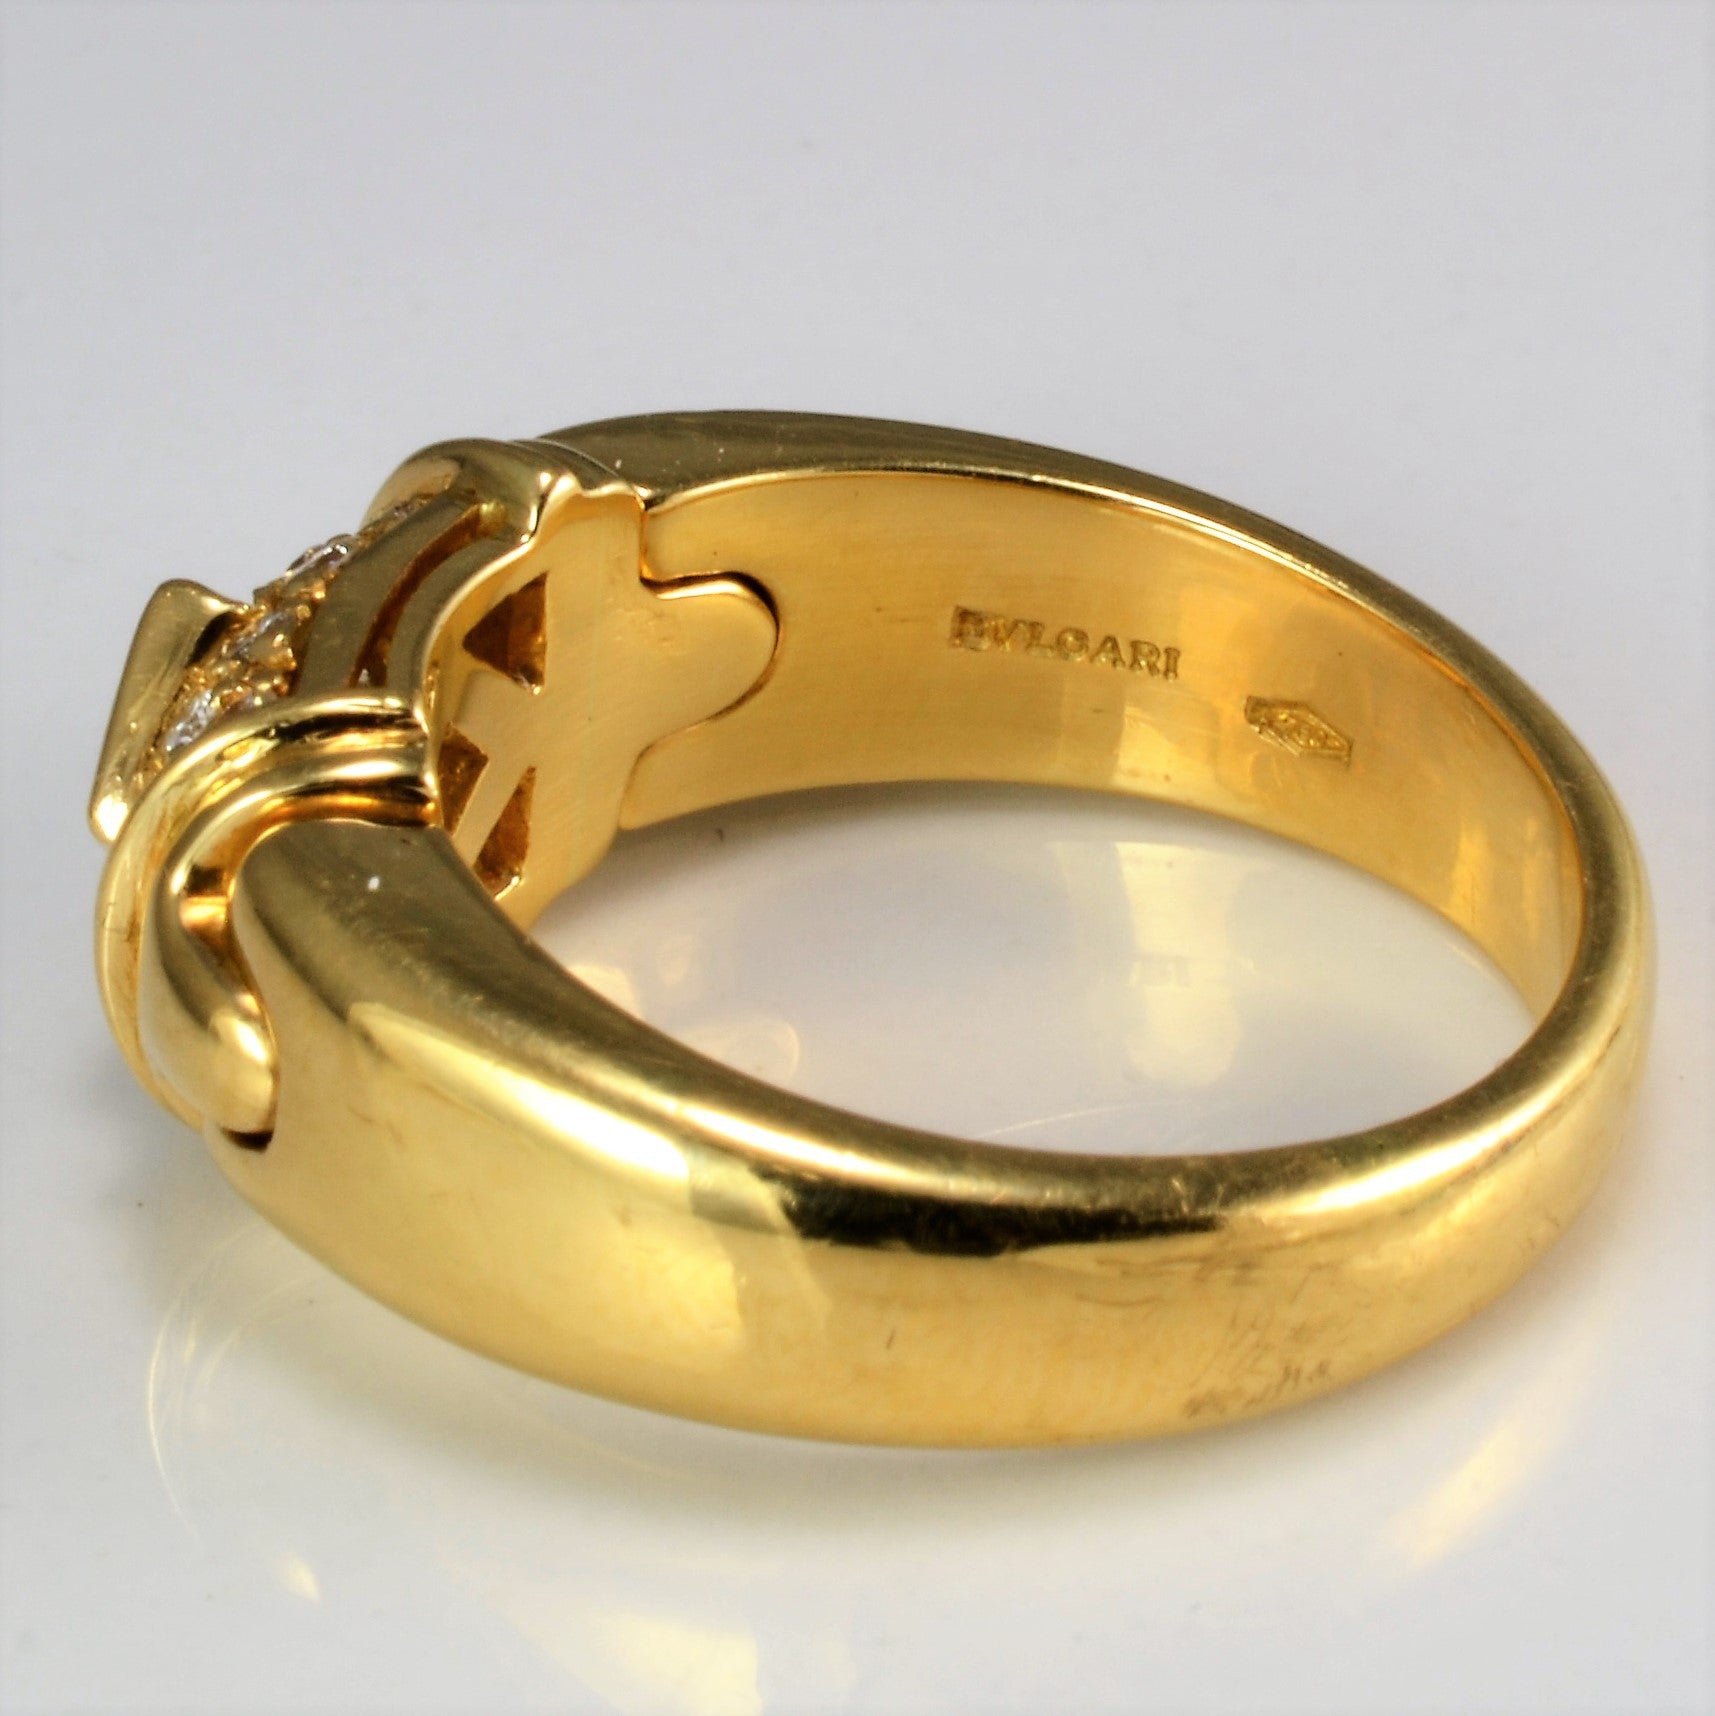 BVLGARI Diamond Engagement Ring